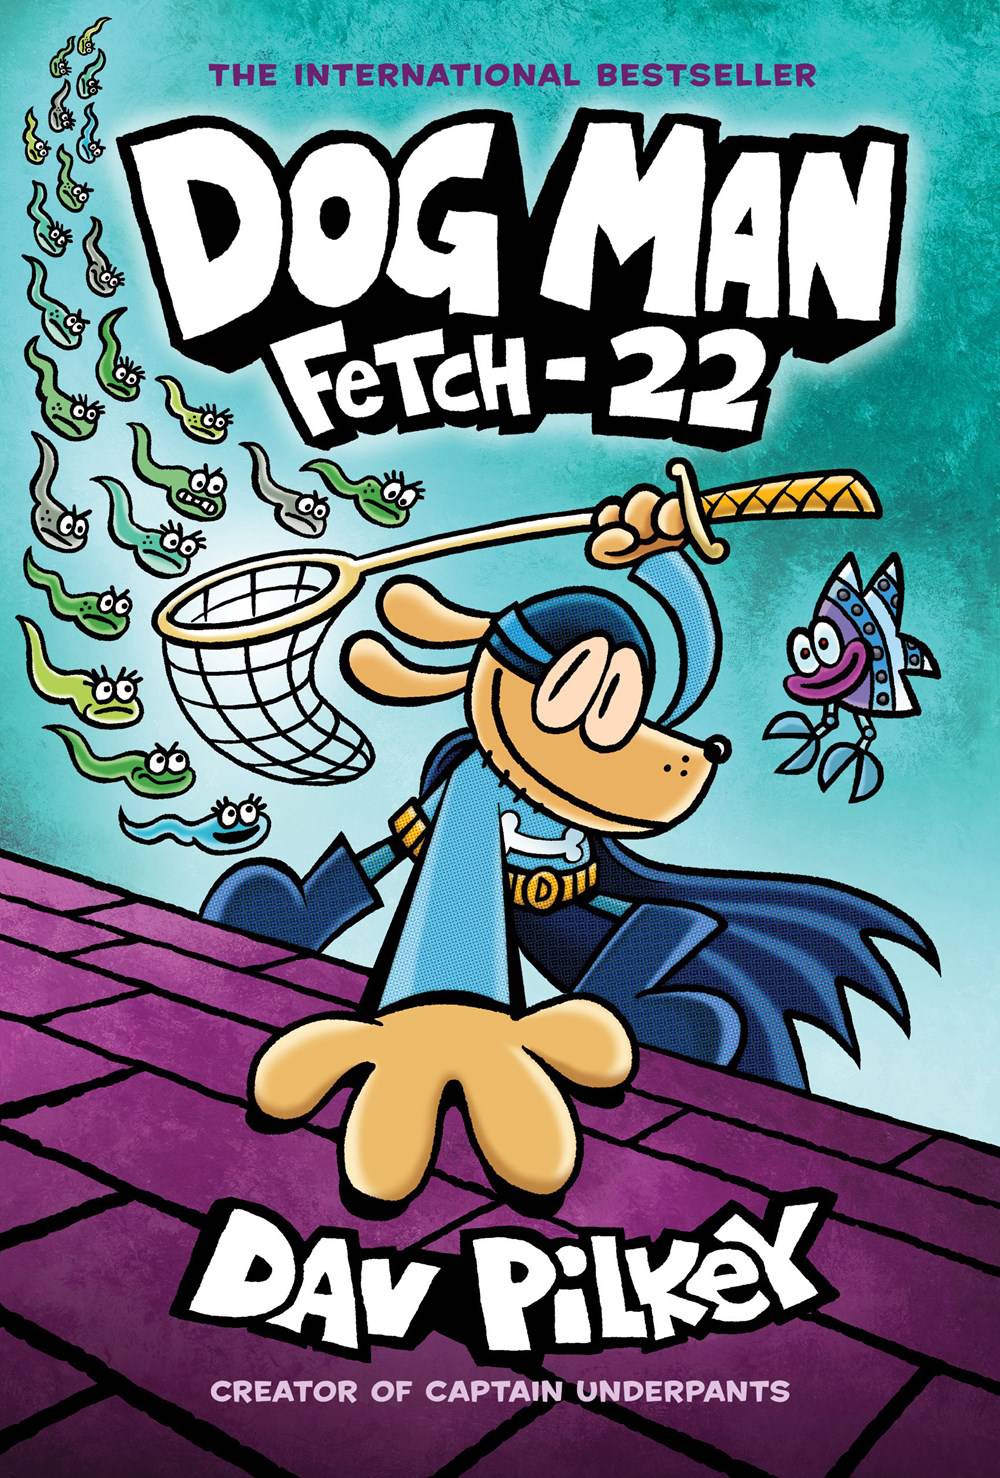 Dog Man Vol 08 Fetch